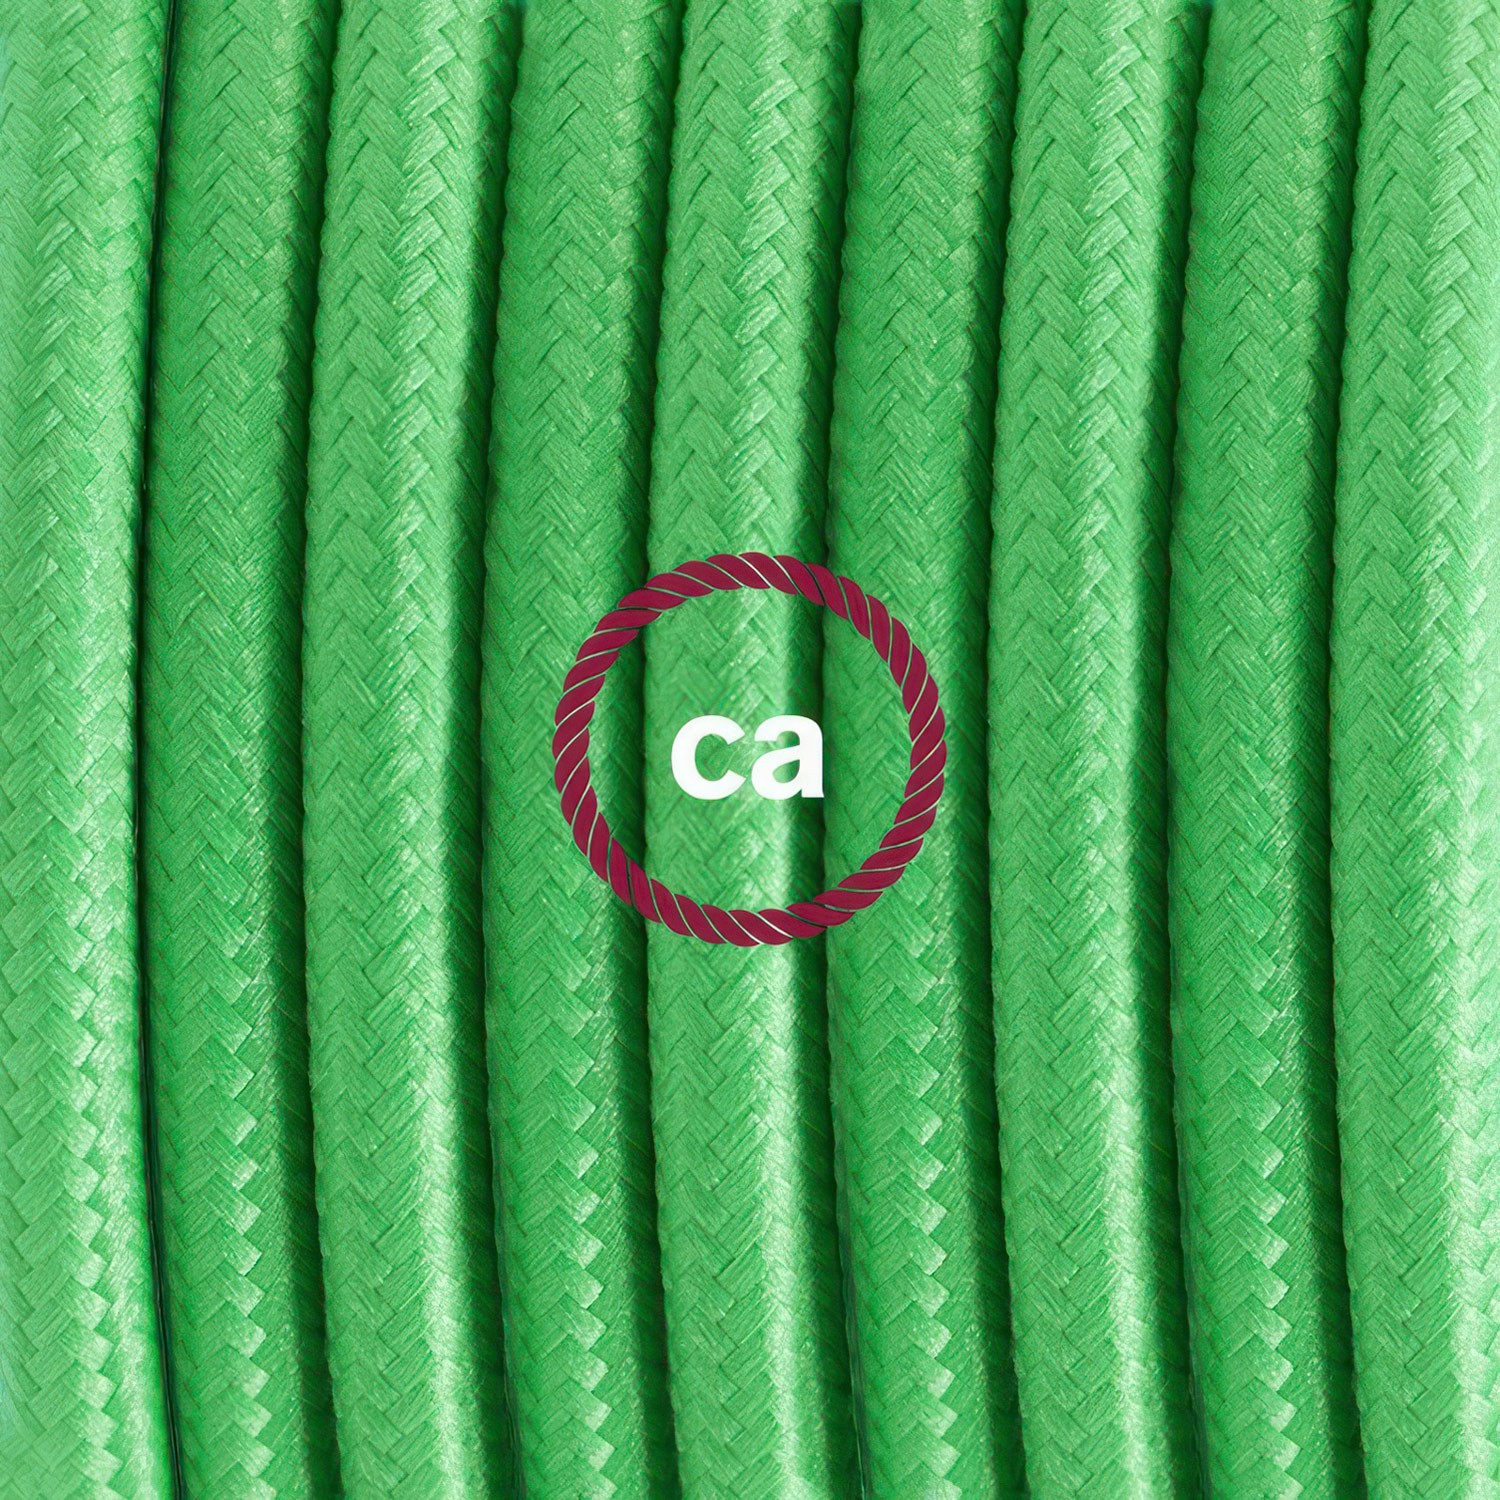 Cableado para lámpara, cable RM18 Efecto Seda Verde Lima 1,8m. Elige tu el color de la clavija y del interruptor!